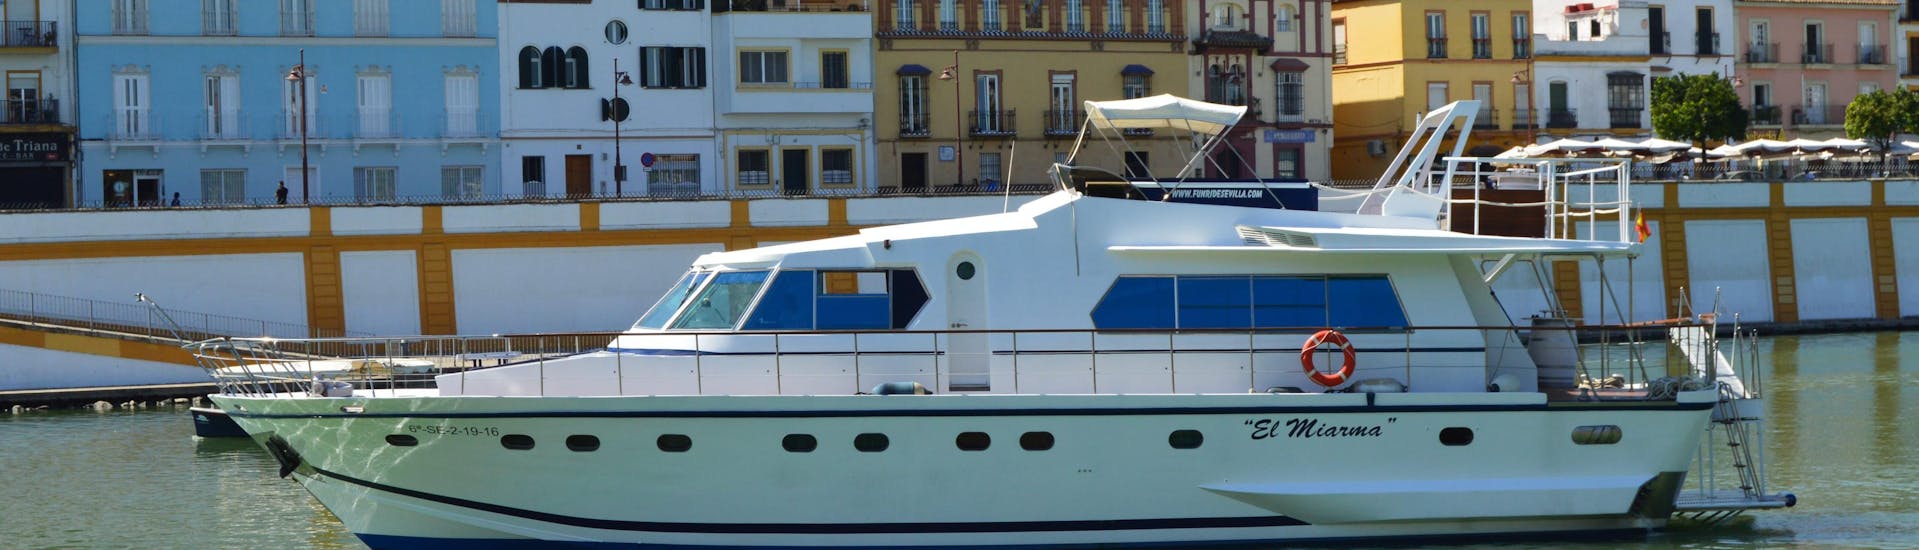 Los participantes quieren conocer Sevilla en todas sus facetas durante su Paseo en barco por el río Guadalquivir con tour por Sevilla de Fun Ride Sevilla.